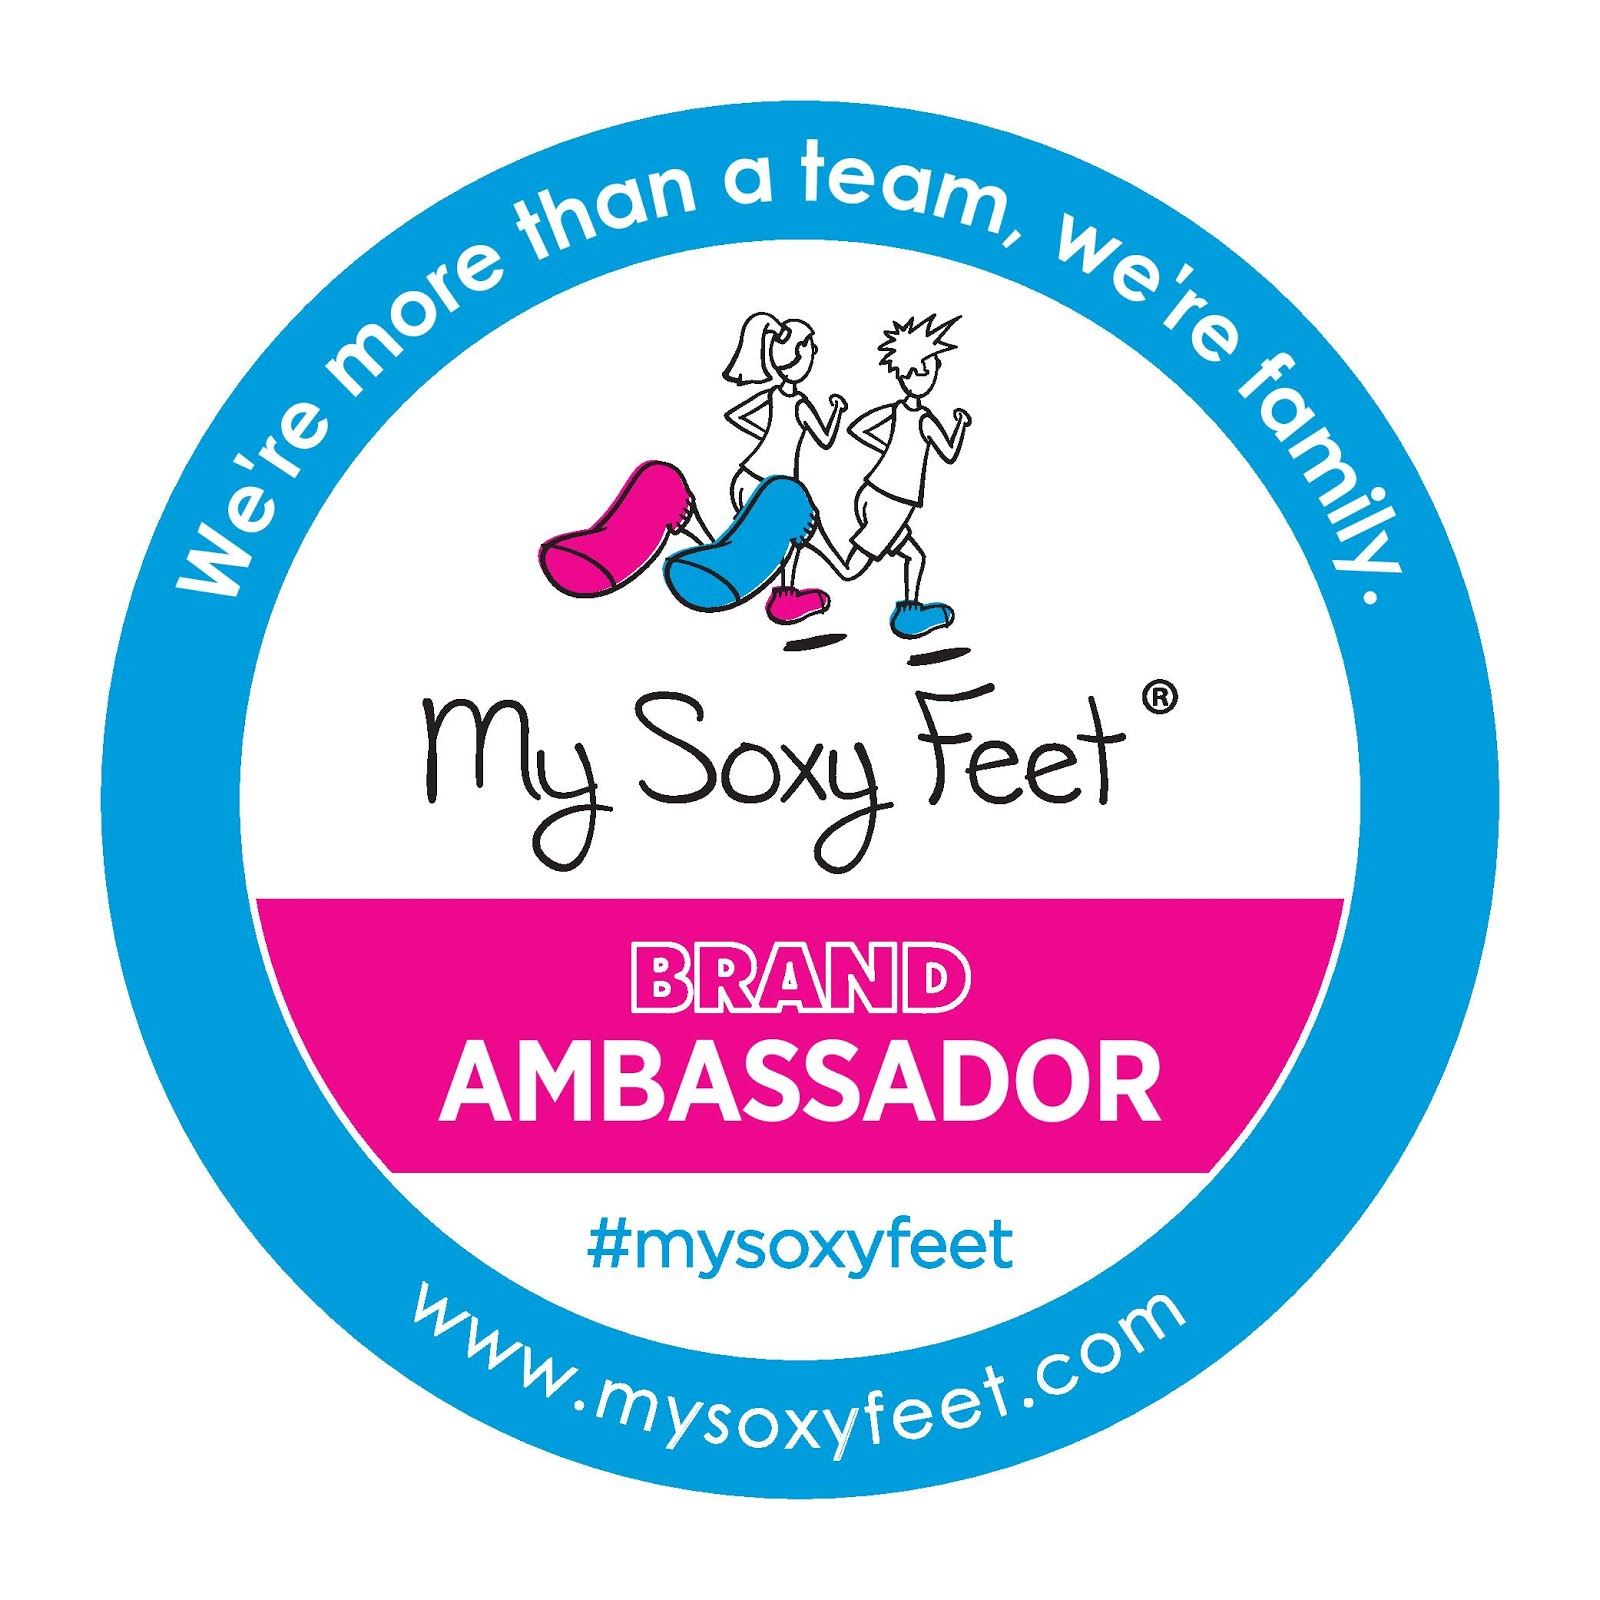 My Soxy Feet Ambassador